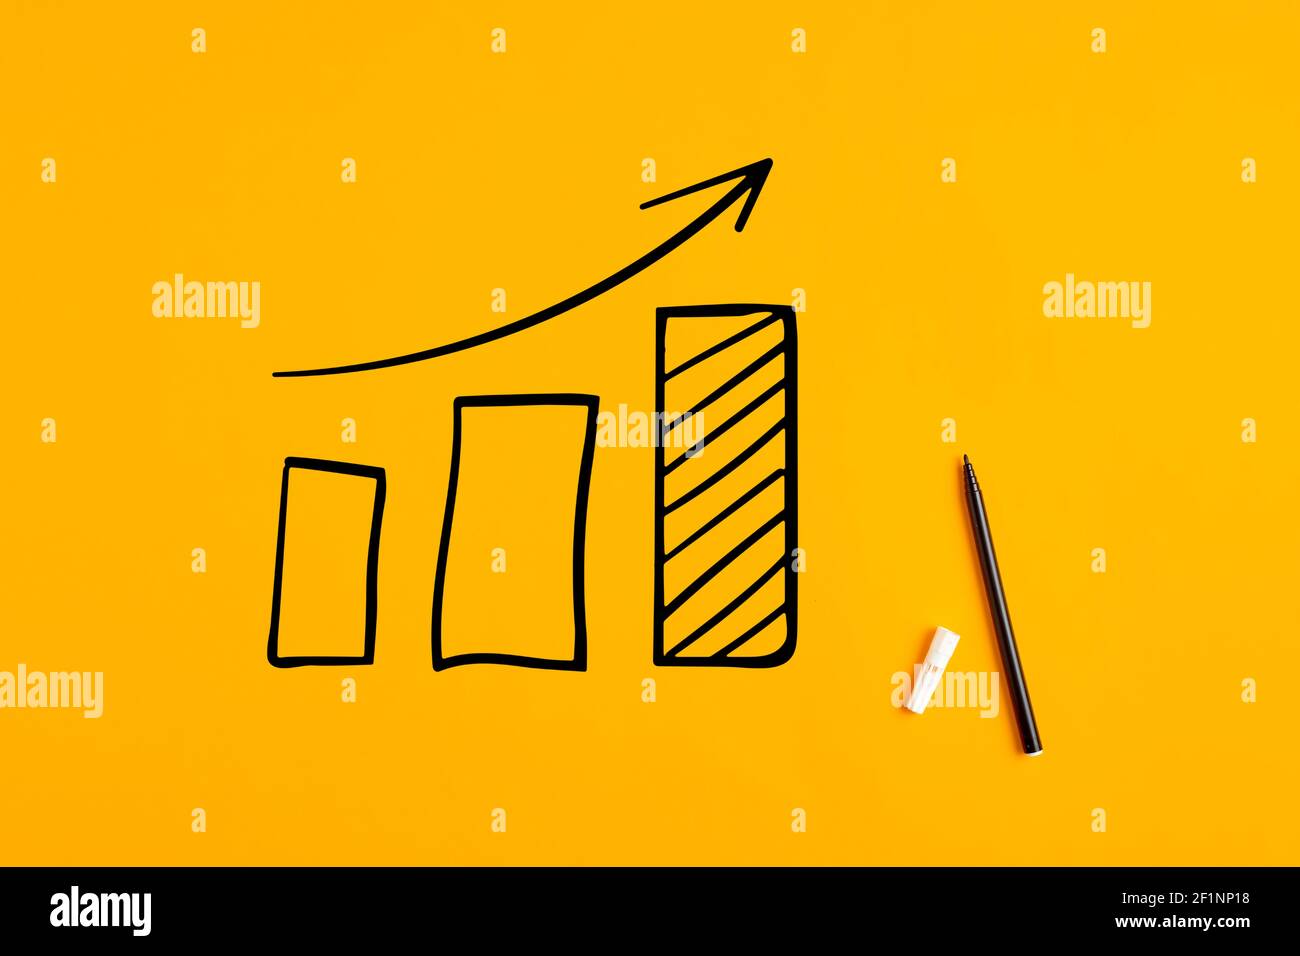 Grafico finanziario statistico disegnato a mano che prevede una crescita o un miglioramento economico finanziario su sfondo giallo. Foto Stock